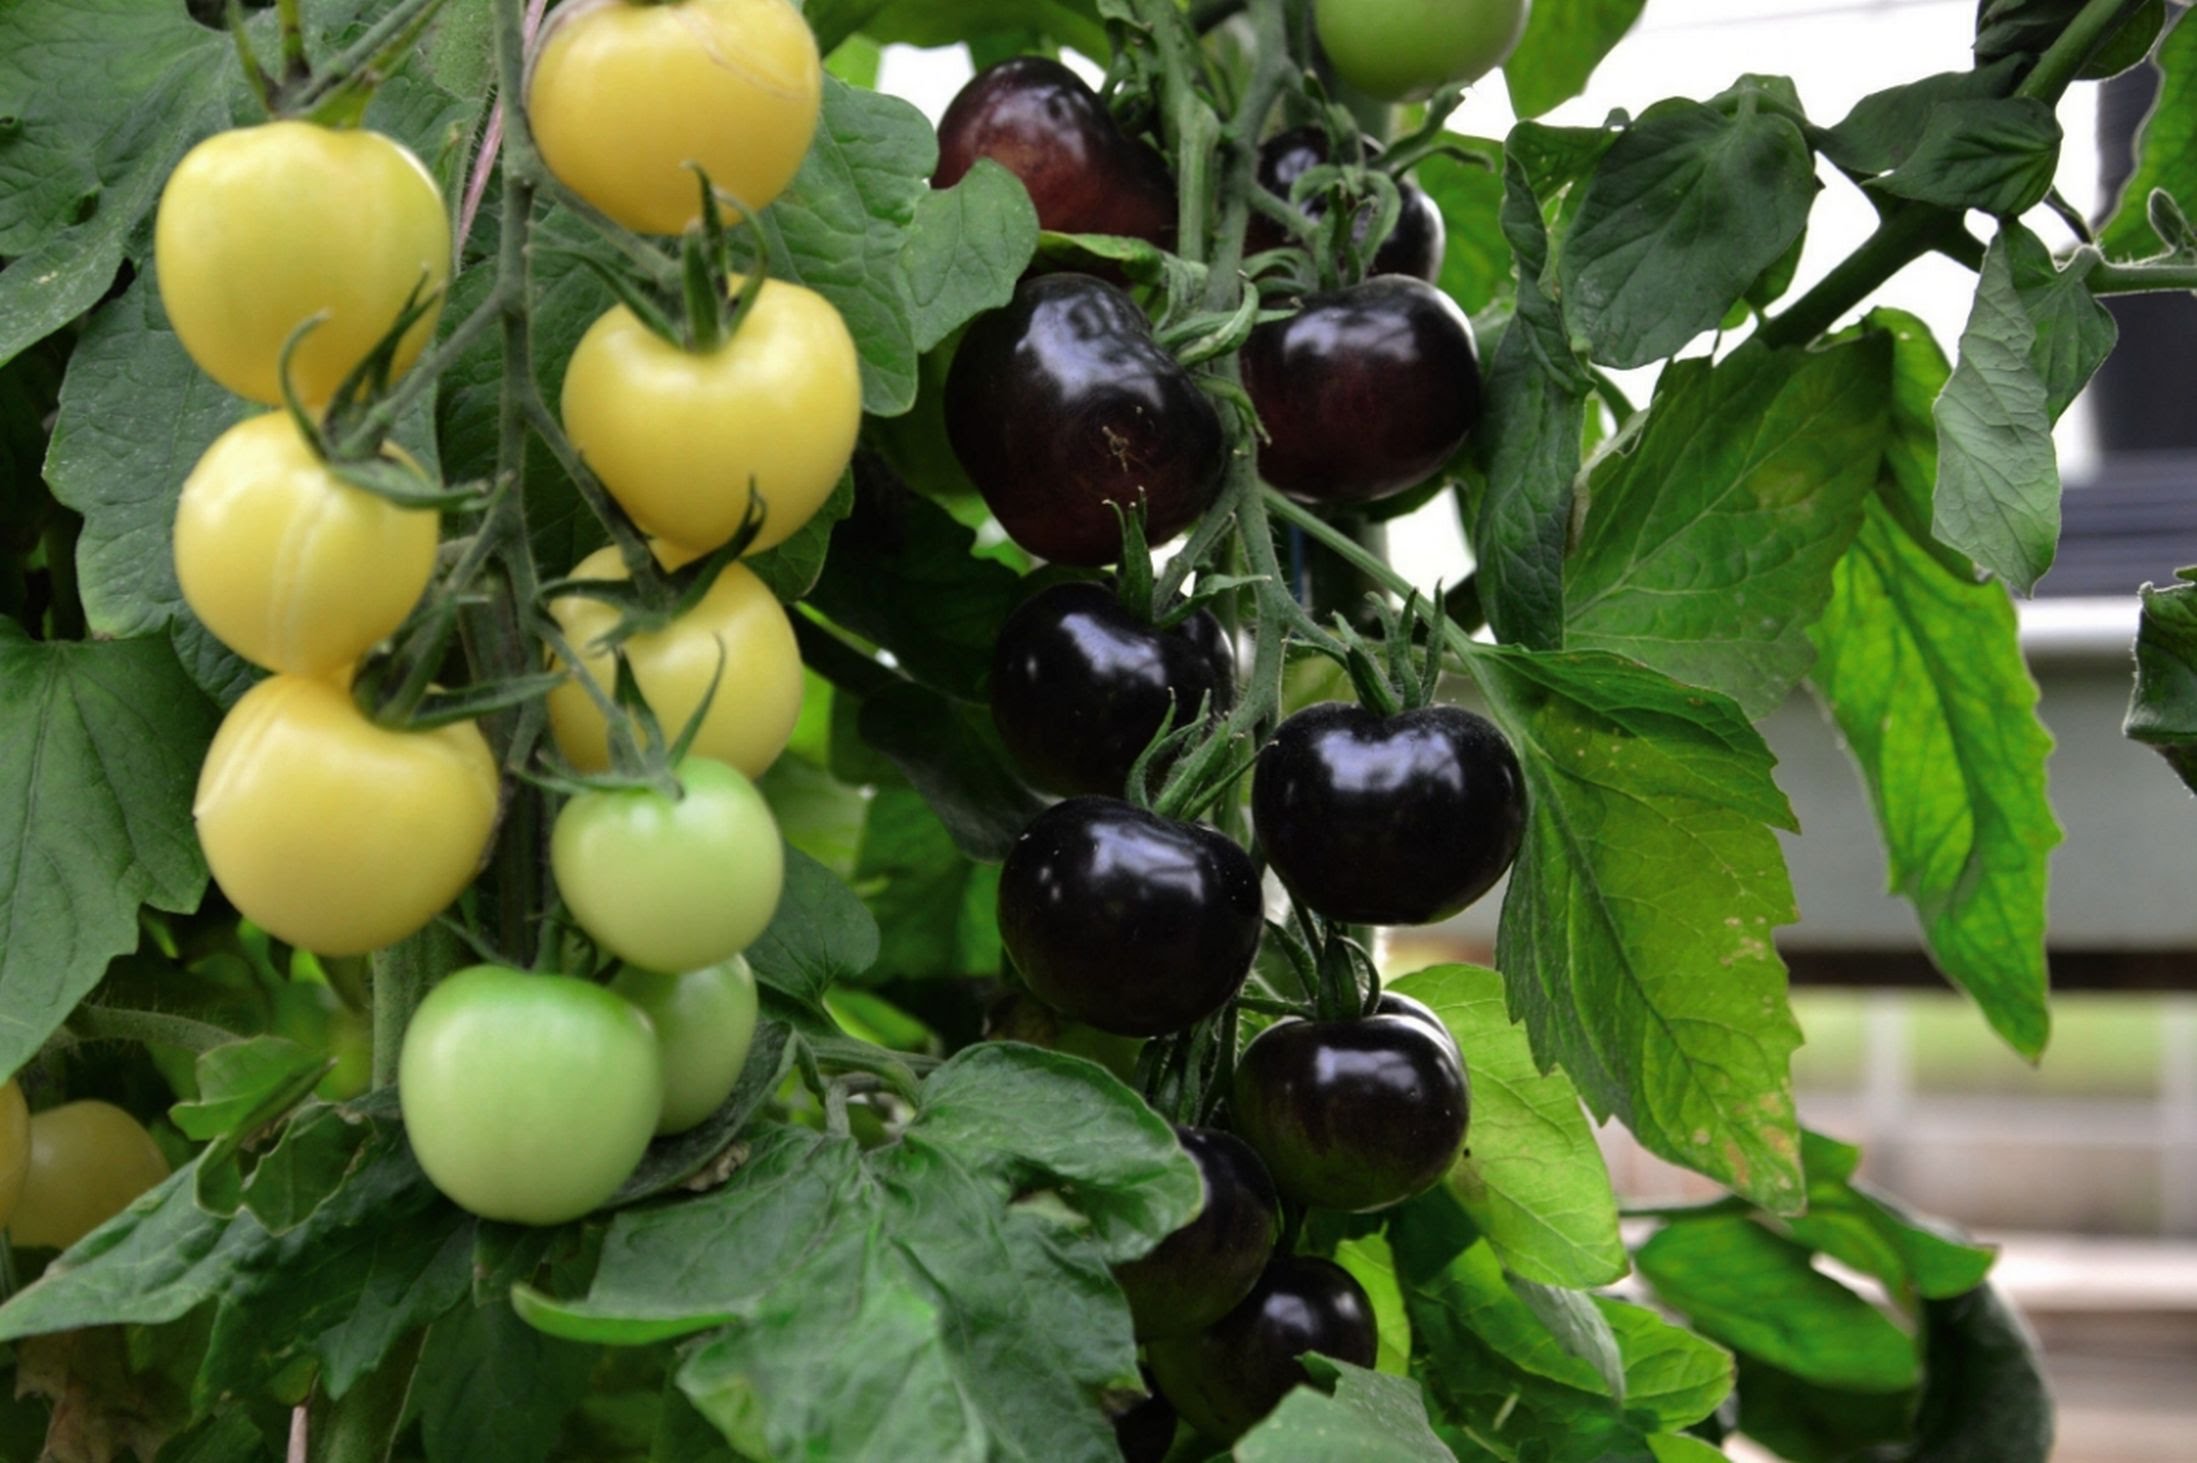 Hướng dẫn bạn cách tự trồng cà chua cherry với vỏ màu đen bóng đẹp hút mắt - Ảnh 8.